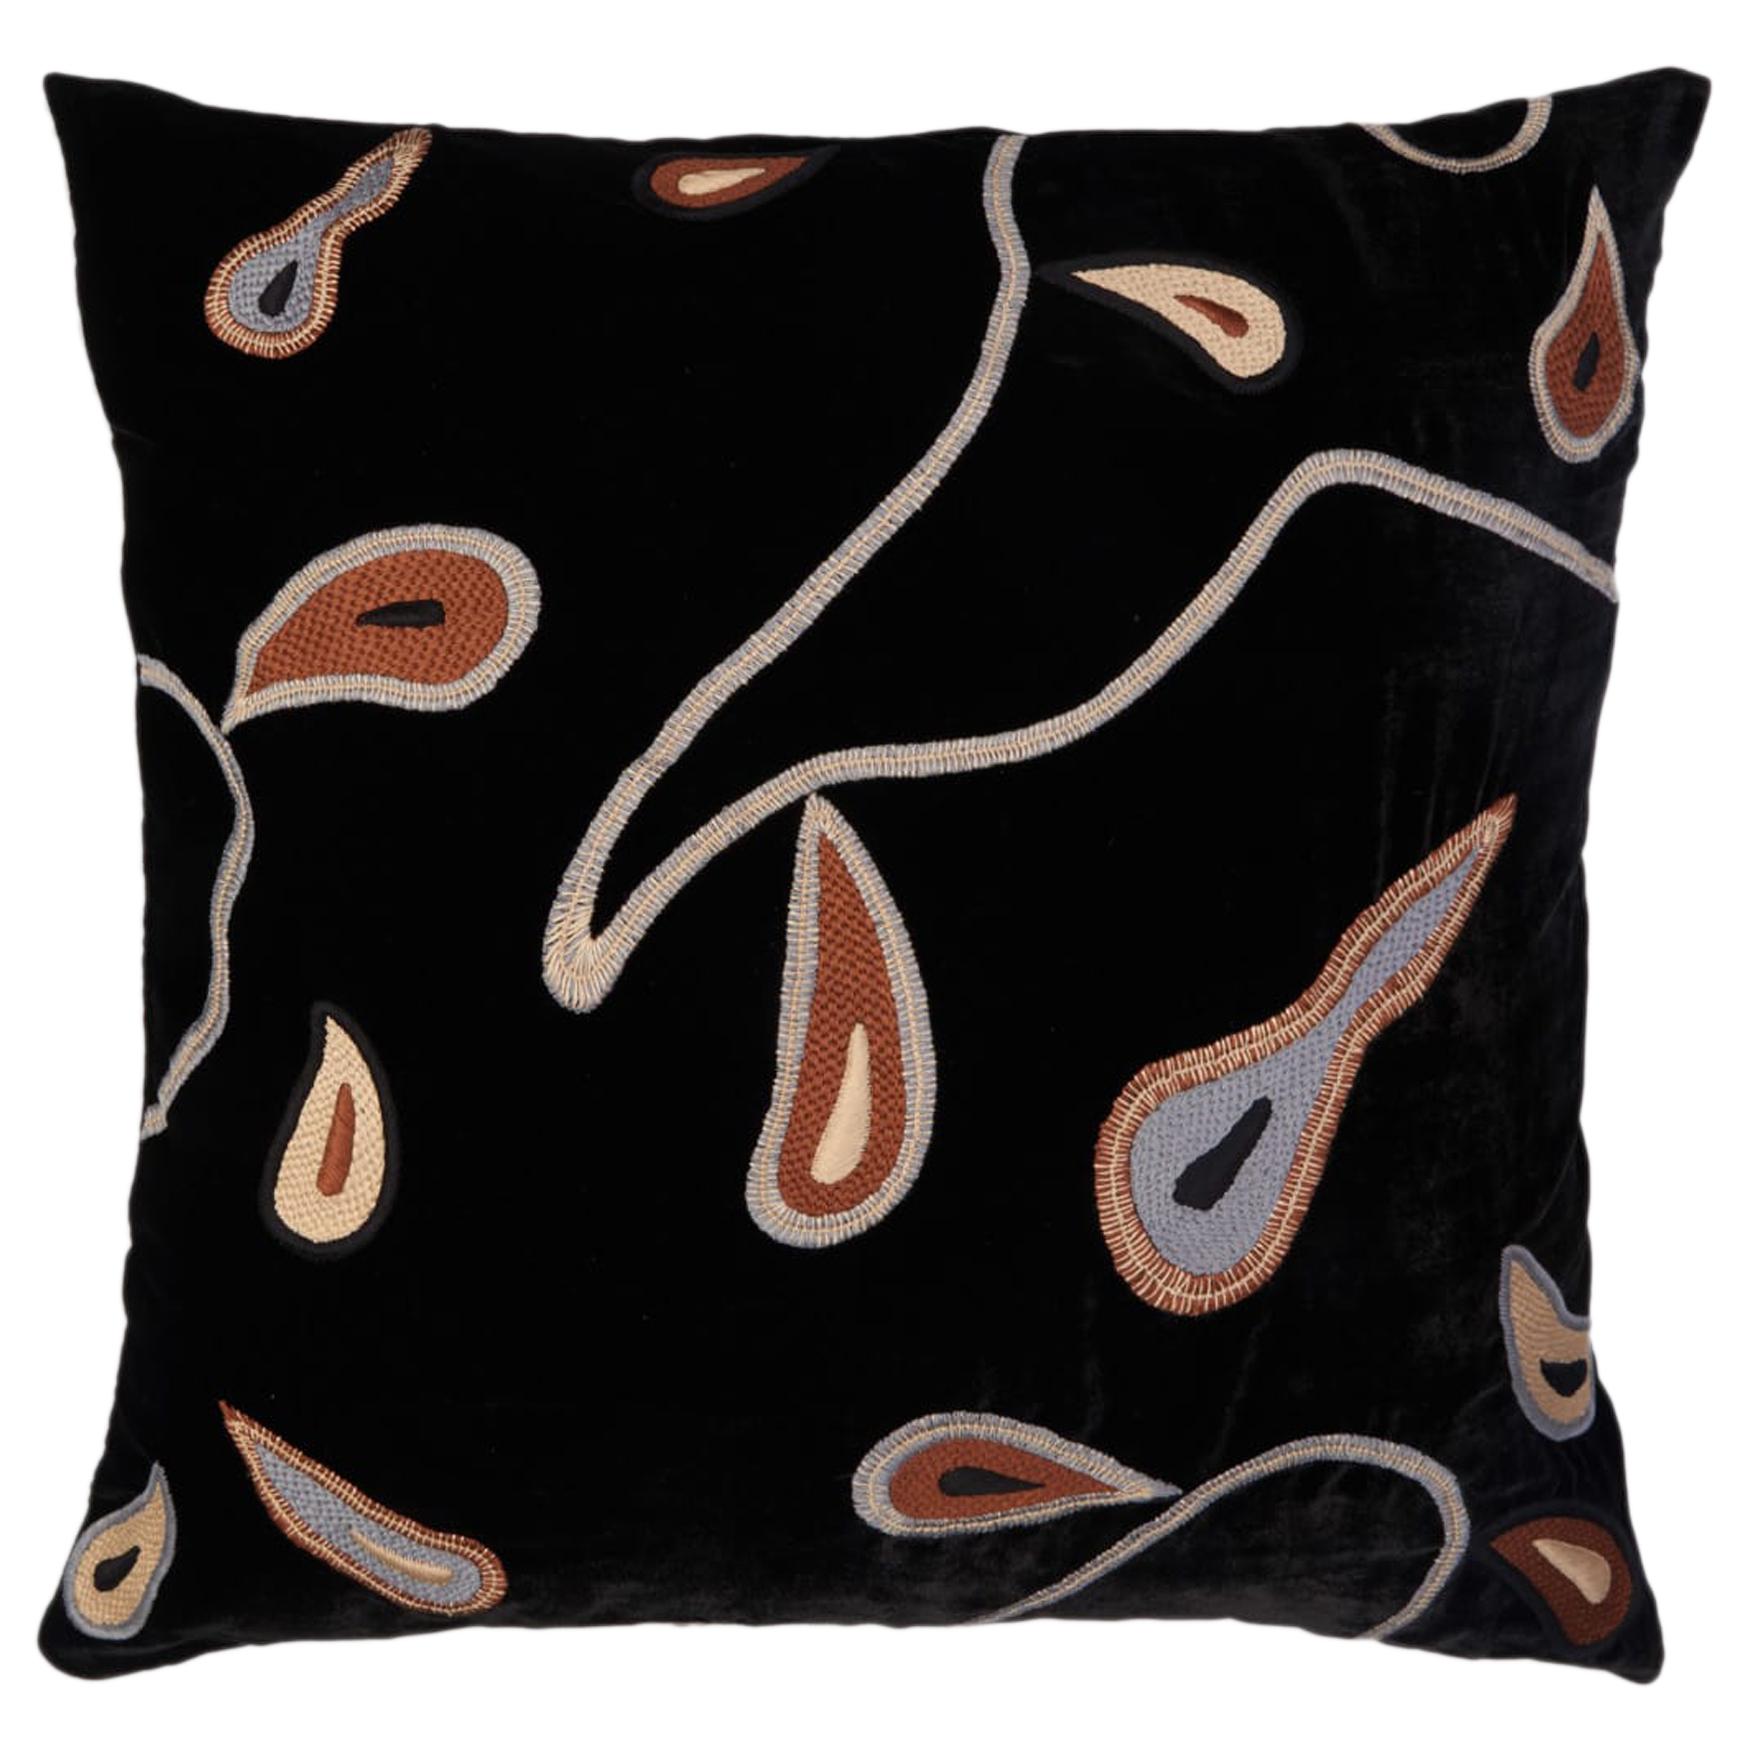 Kulikovo Hand Embroidered Black Velvet Pillow Cover For Sale